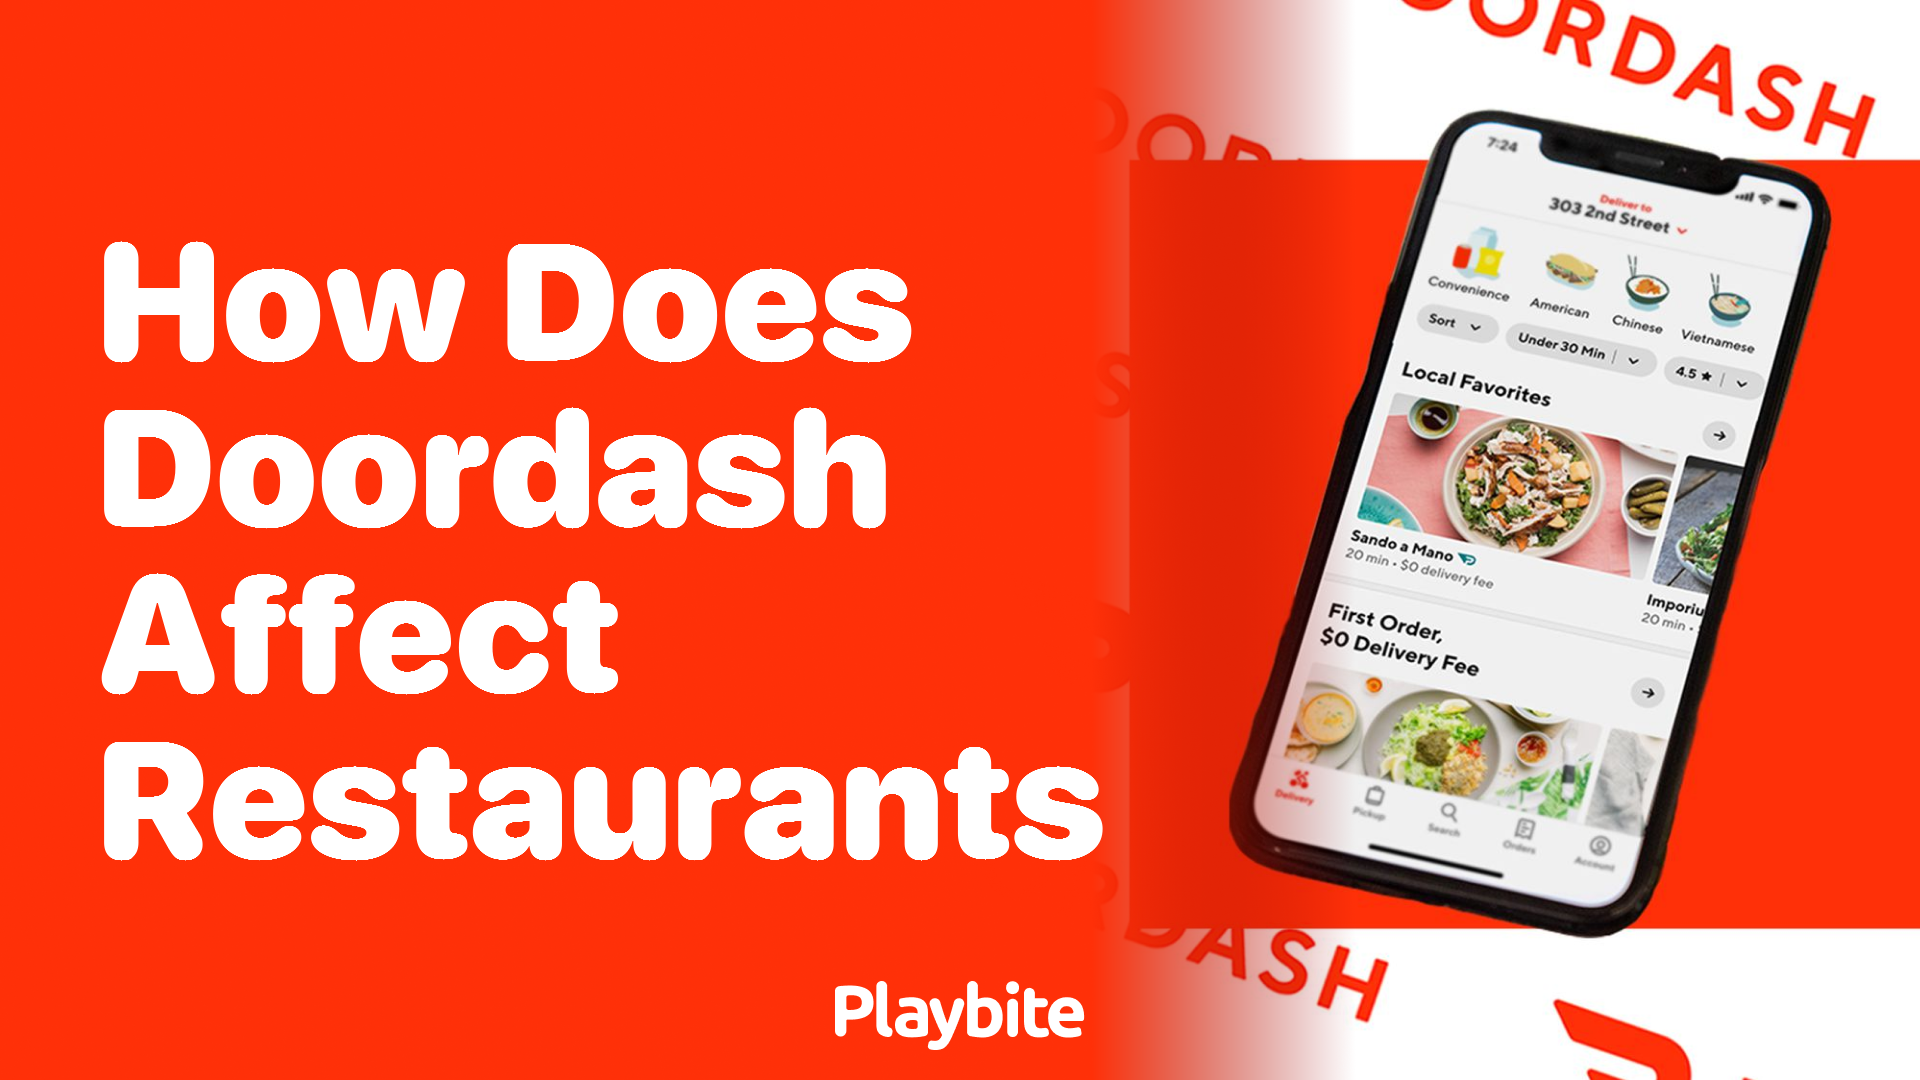 How Does DoorDash Impact Restaurants?